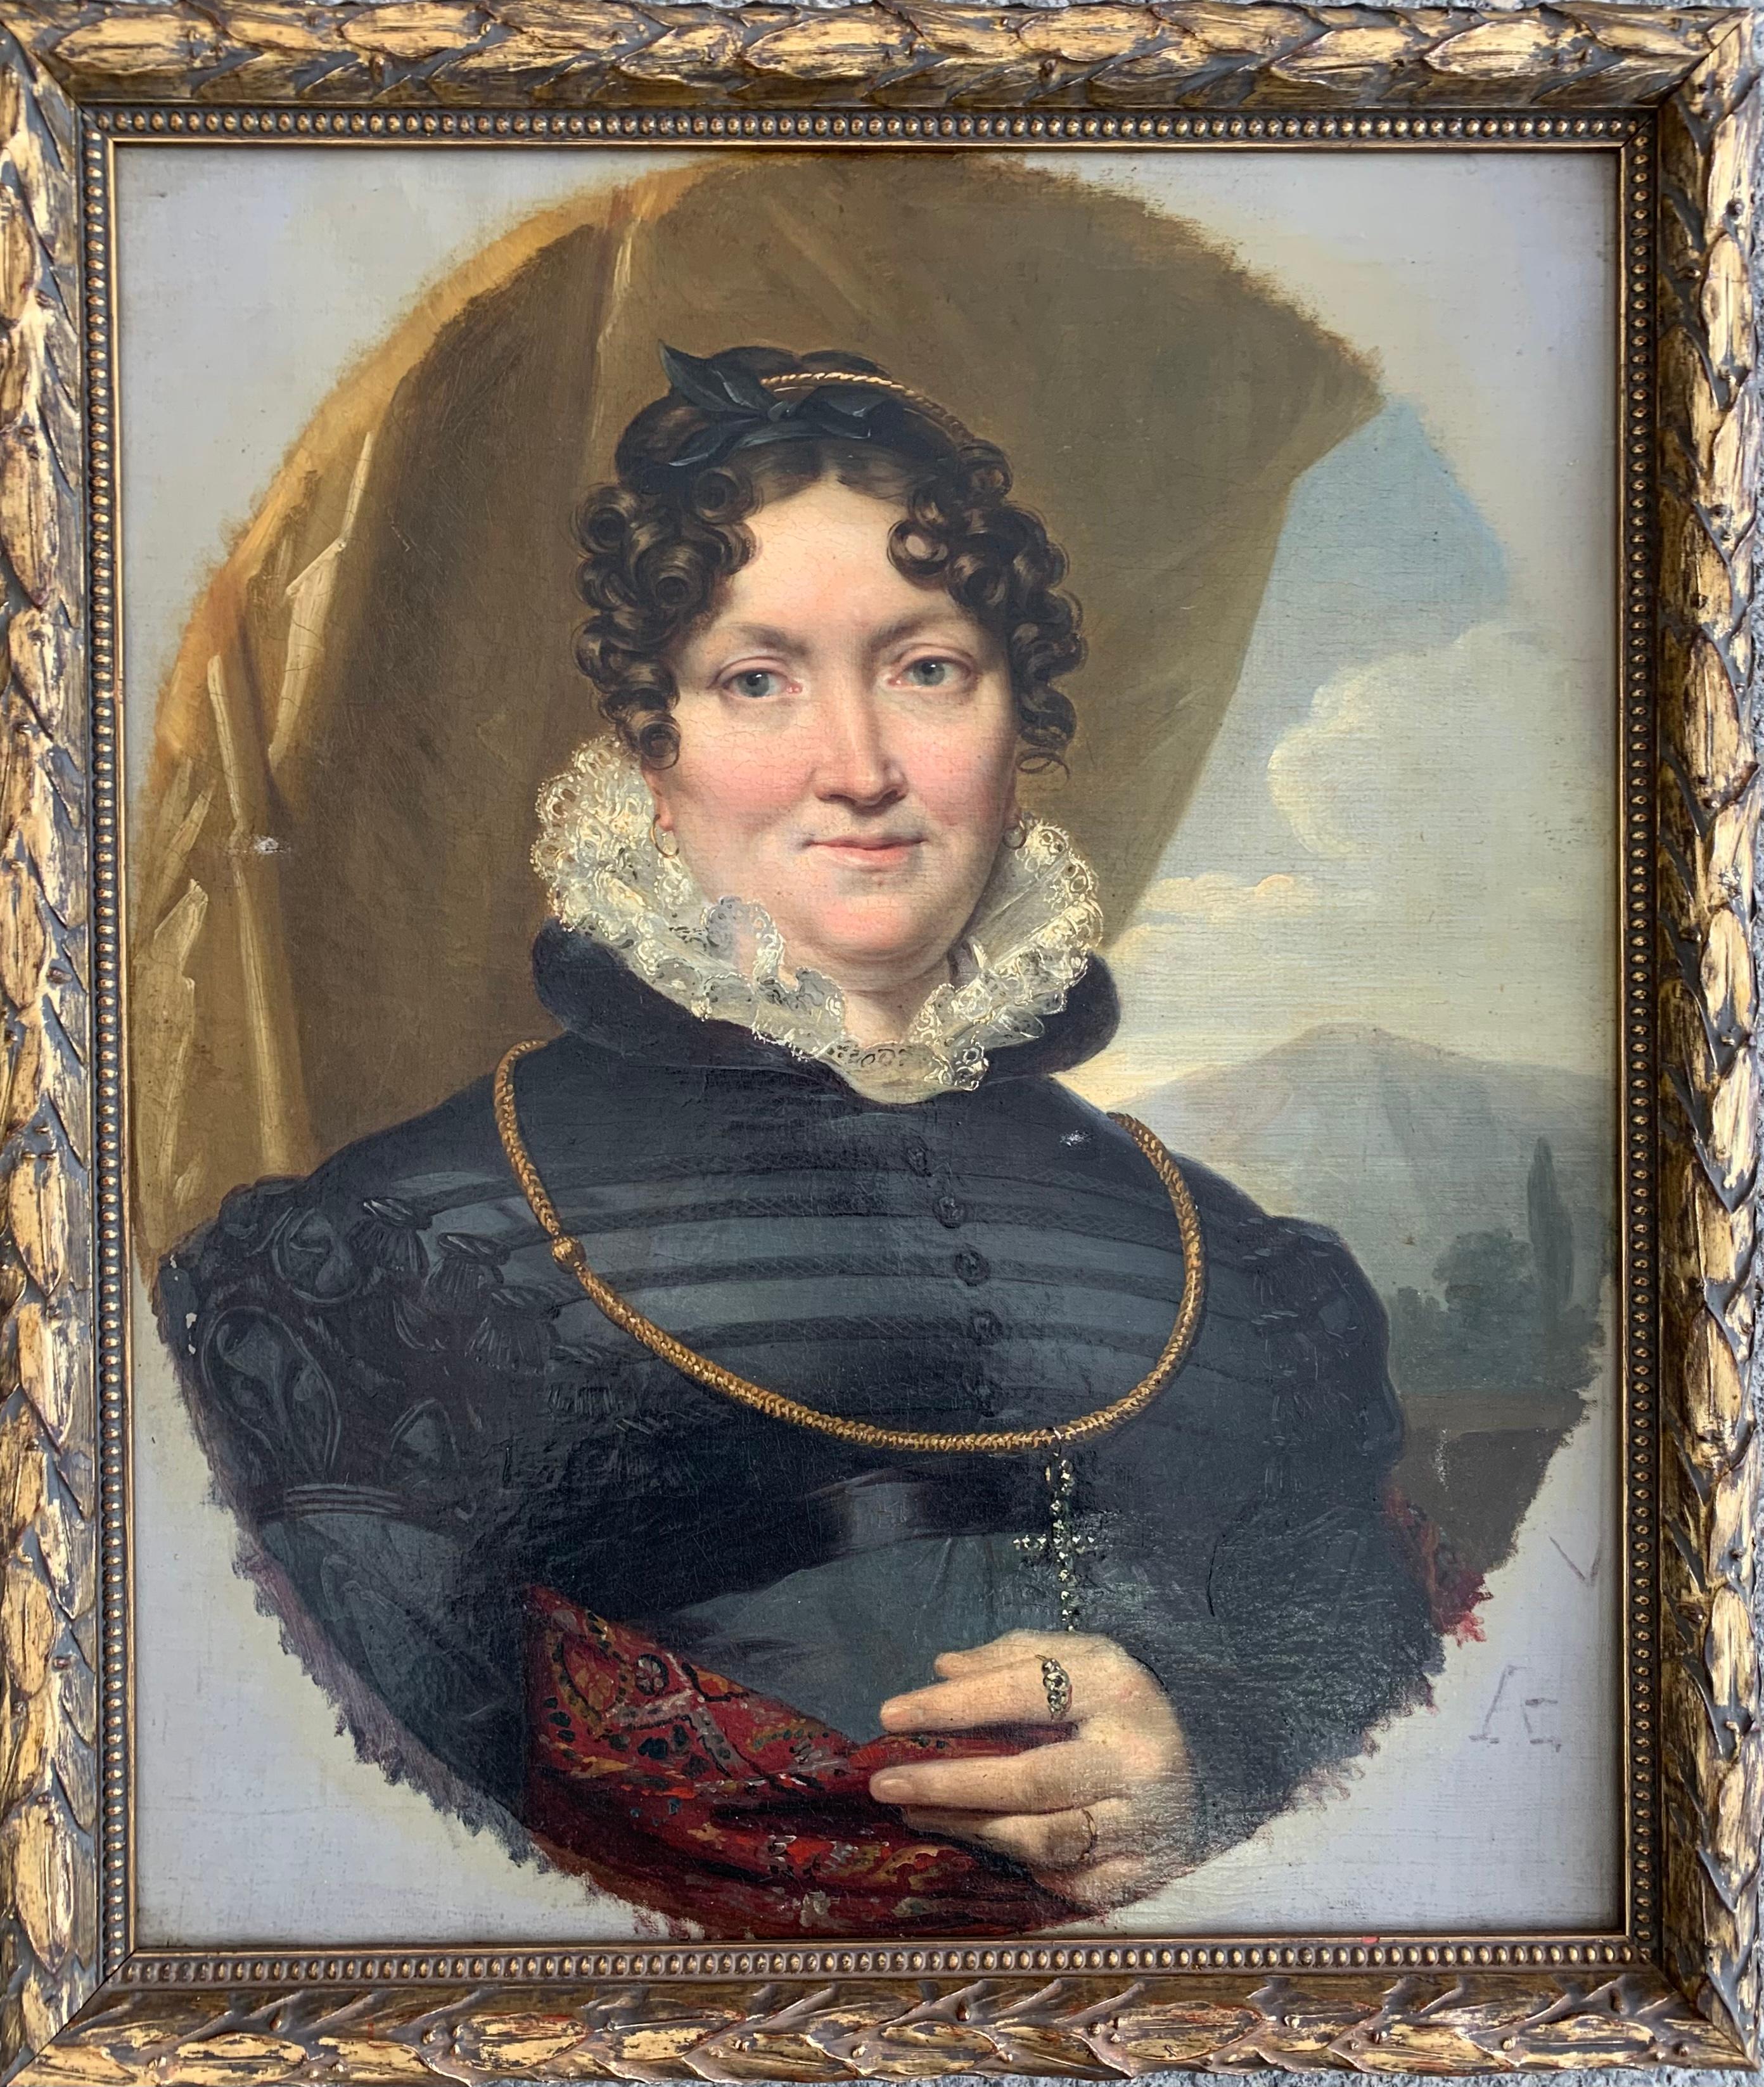 Léon Cogniet Portrait Painting - Ca. 1820 Portrait of a Woman with Kashmir shawl.